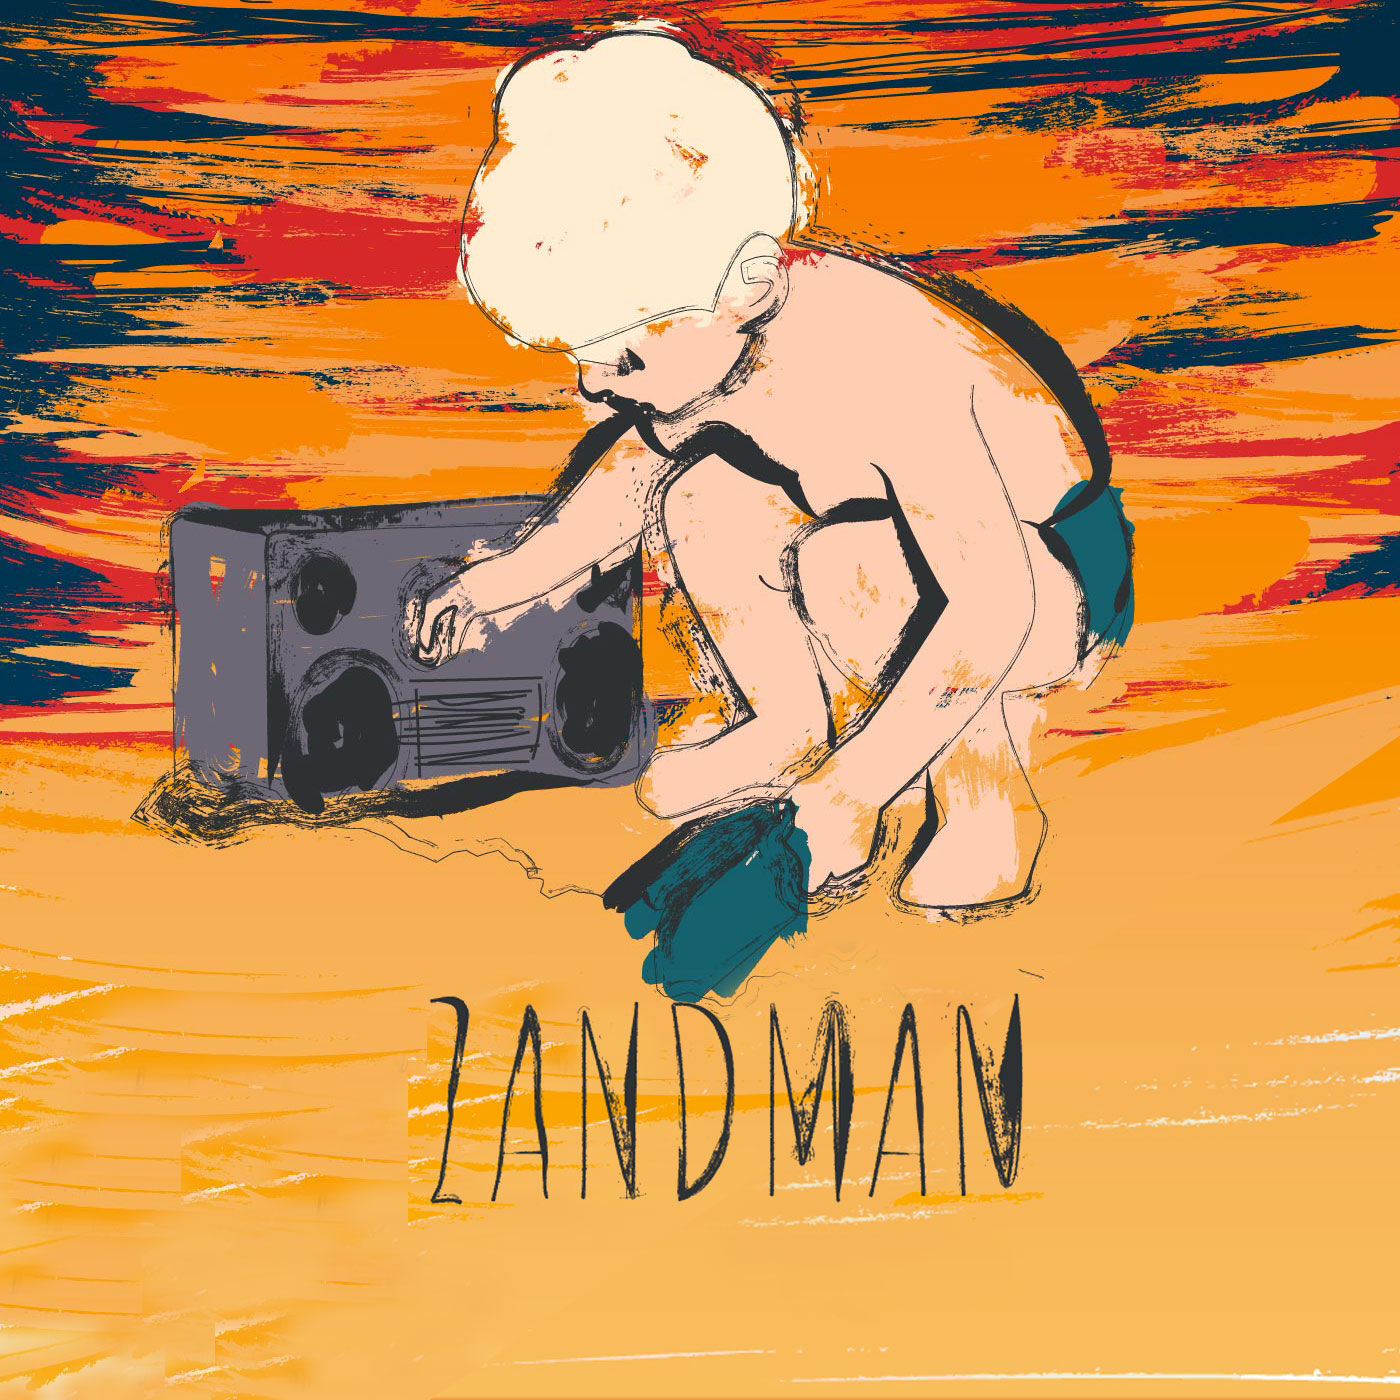 Zandman logo